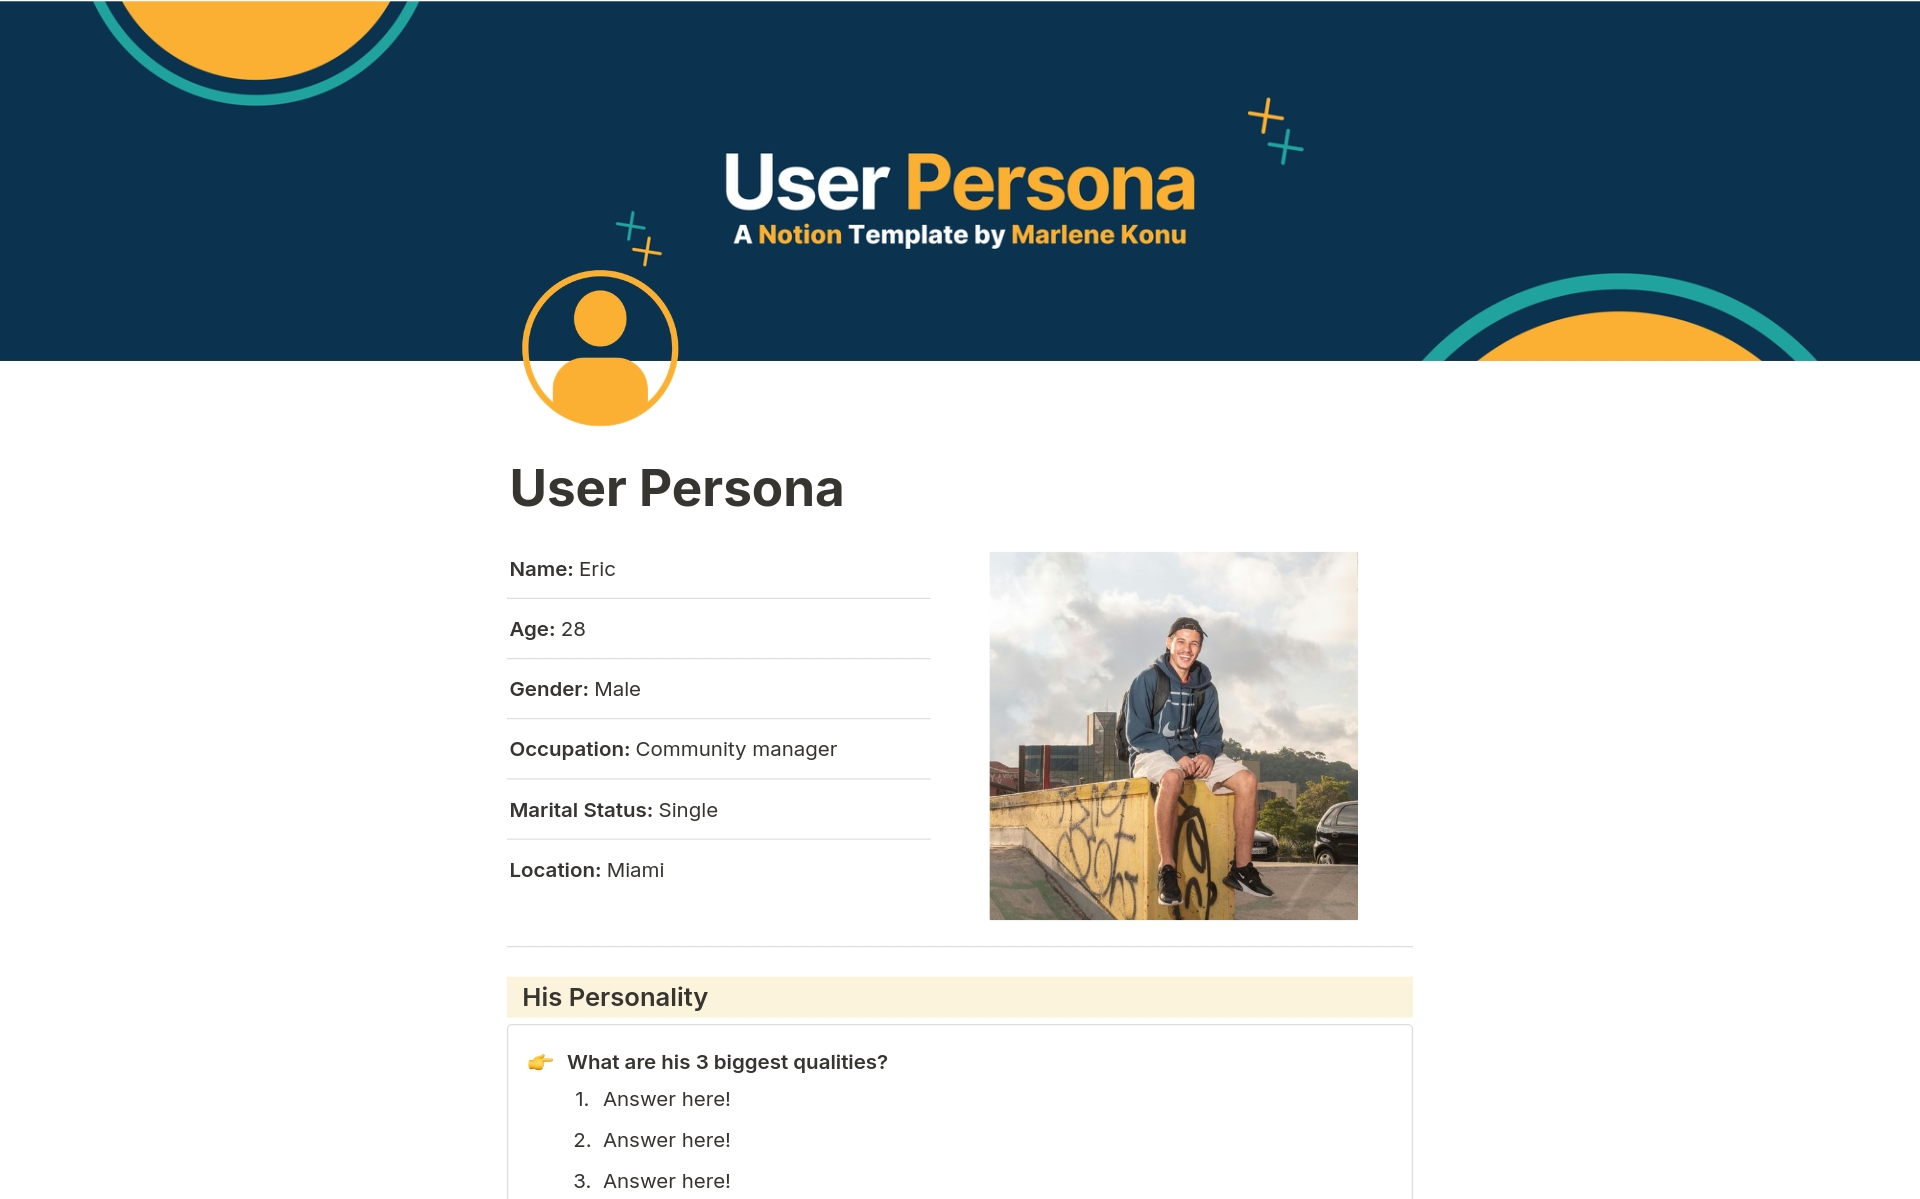 Vista previa de plantilla para User Persona Notion Template & Workbook